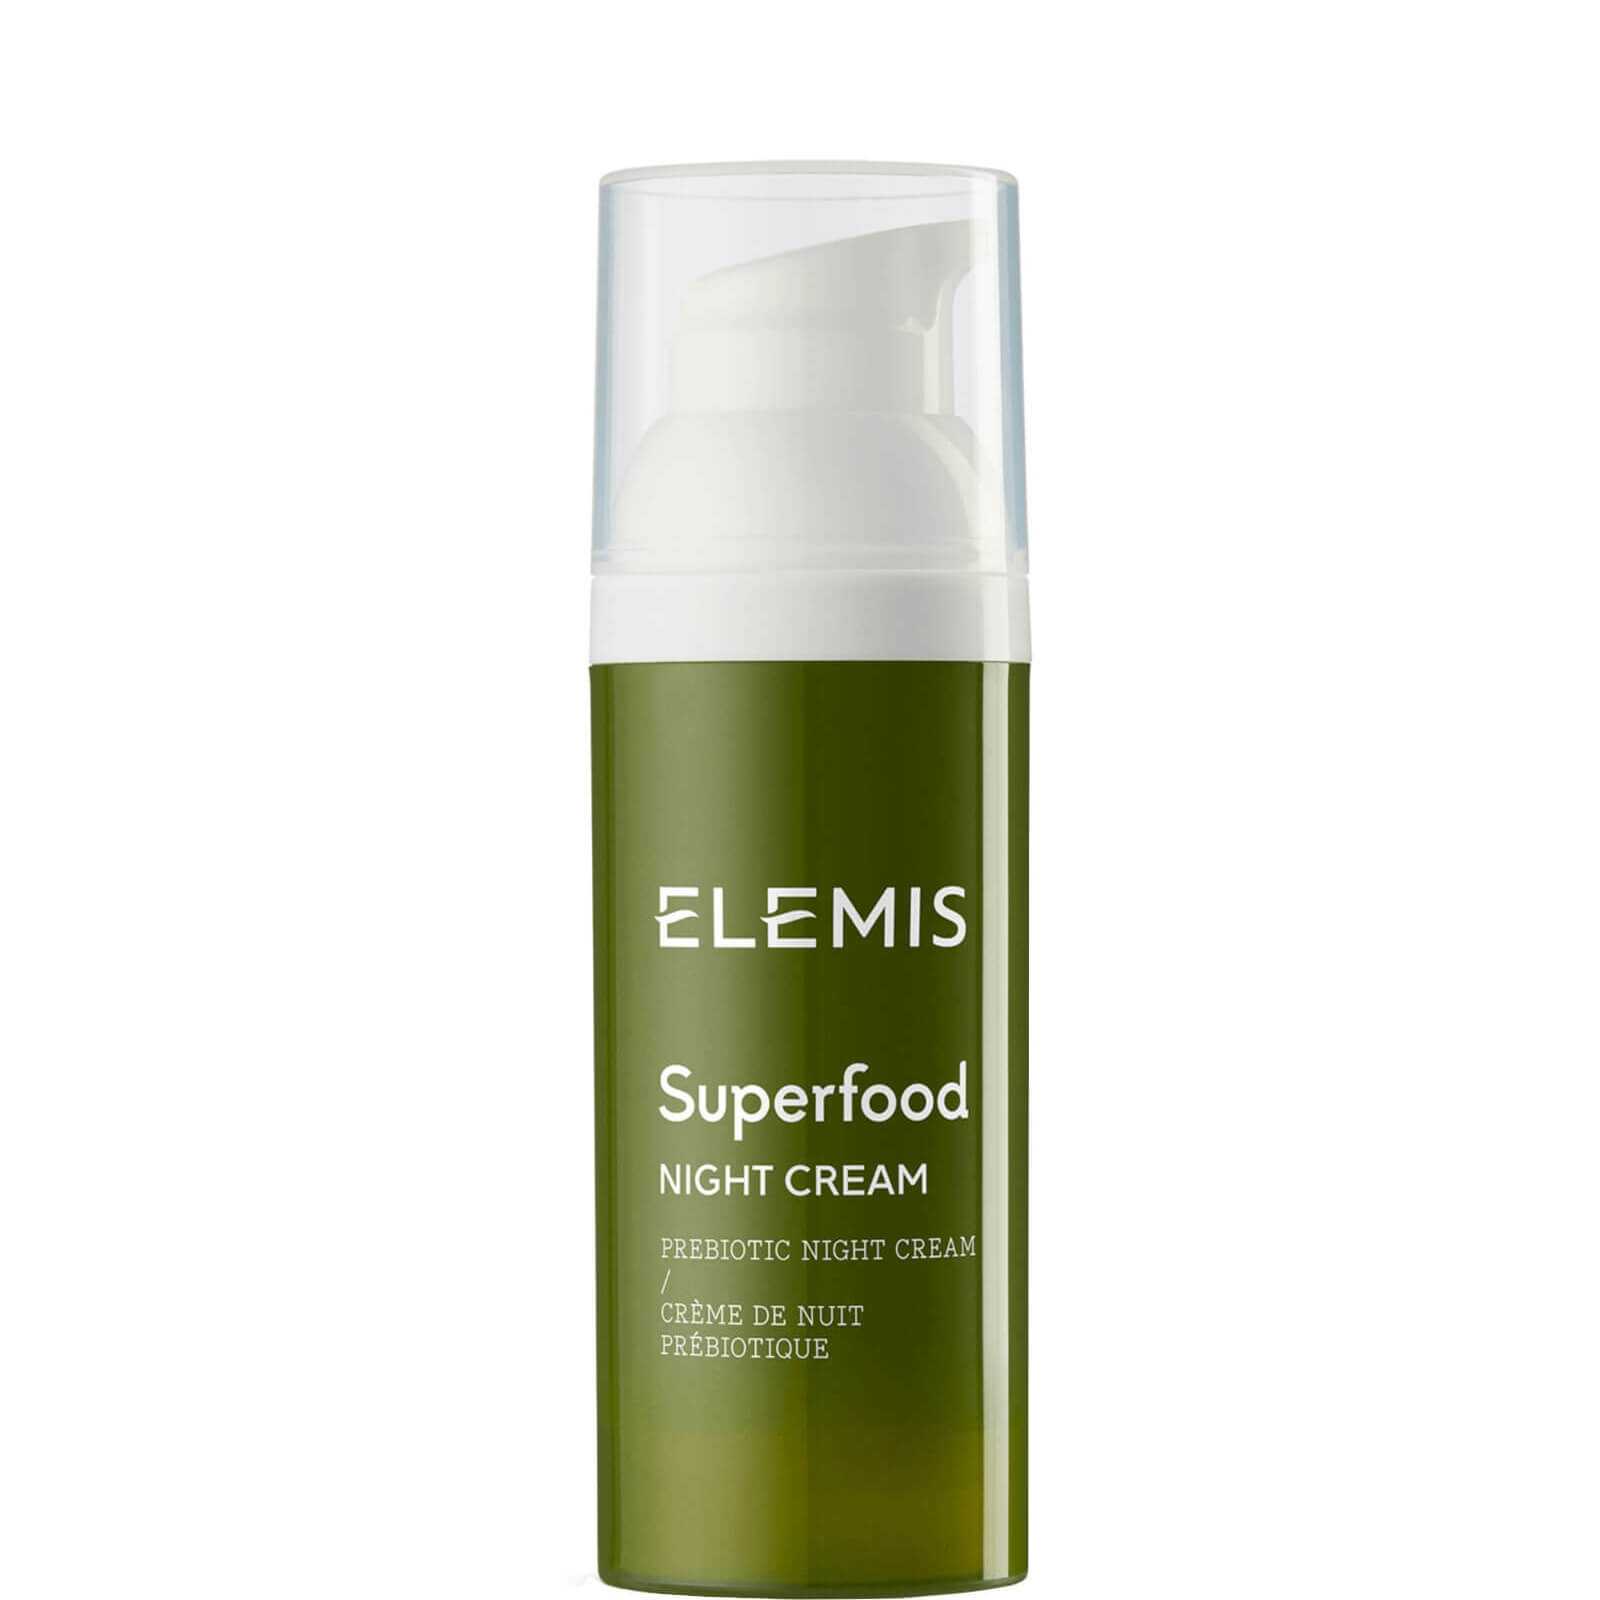 elemis advanced skincare - superfood night cream 50 ml donna